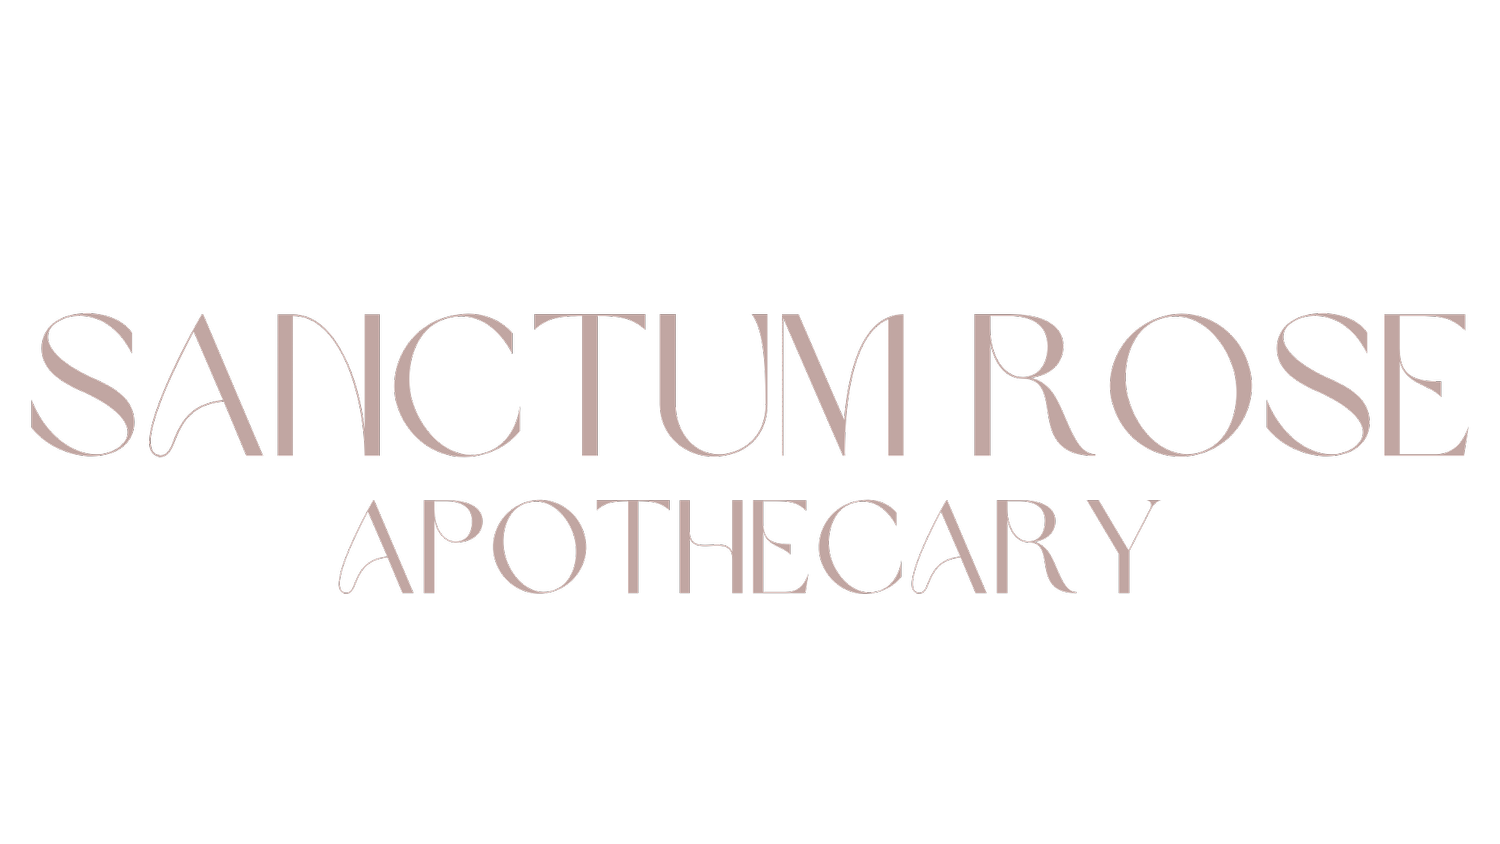 Sanctum Rose Apothecary